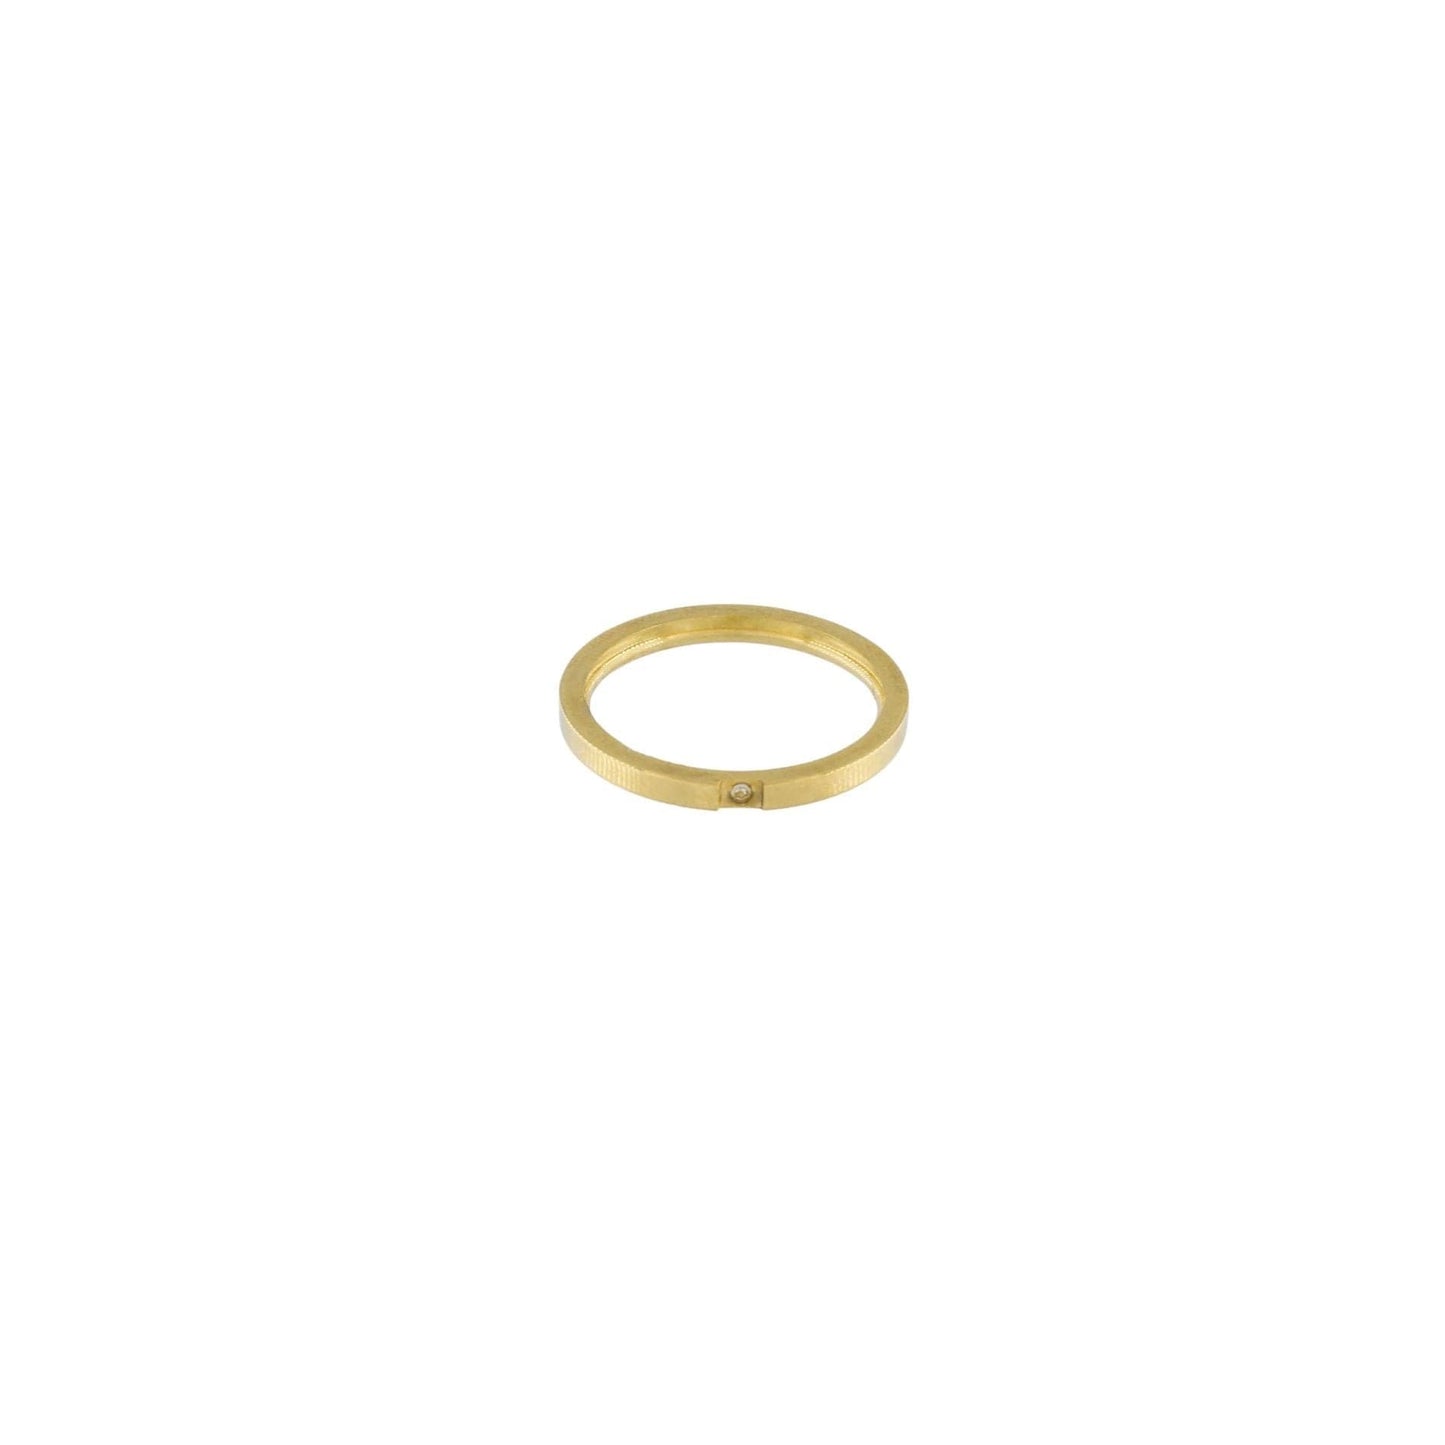 Joy Waterproof Clear CZ Square Stone Ring 18K Gold Plating I Dansk Copenhagen